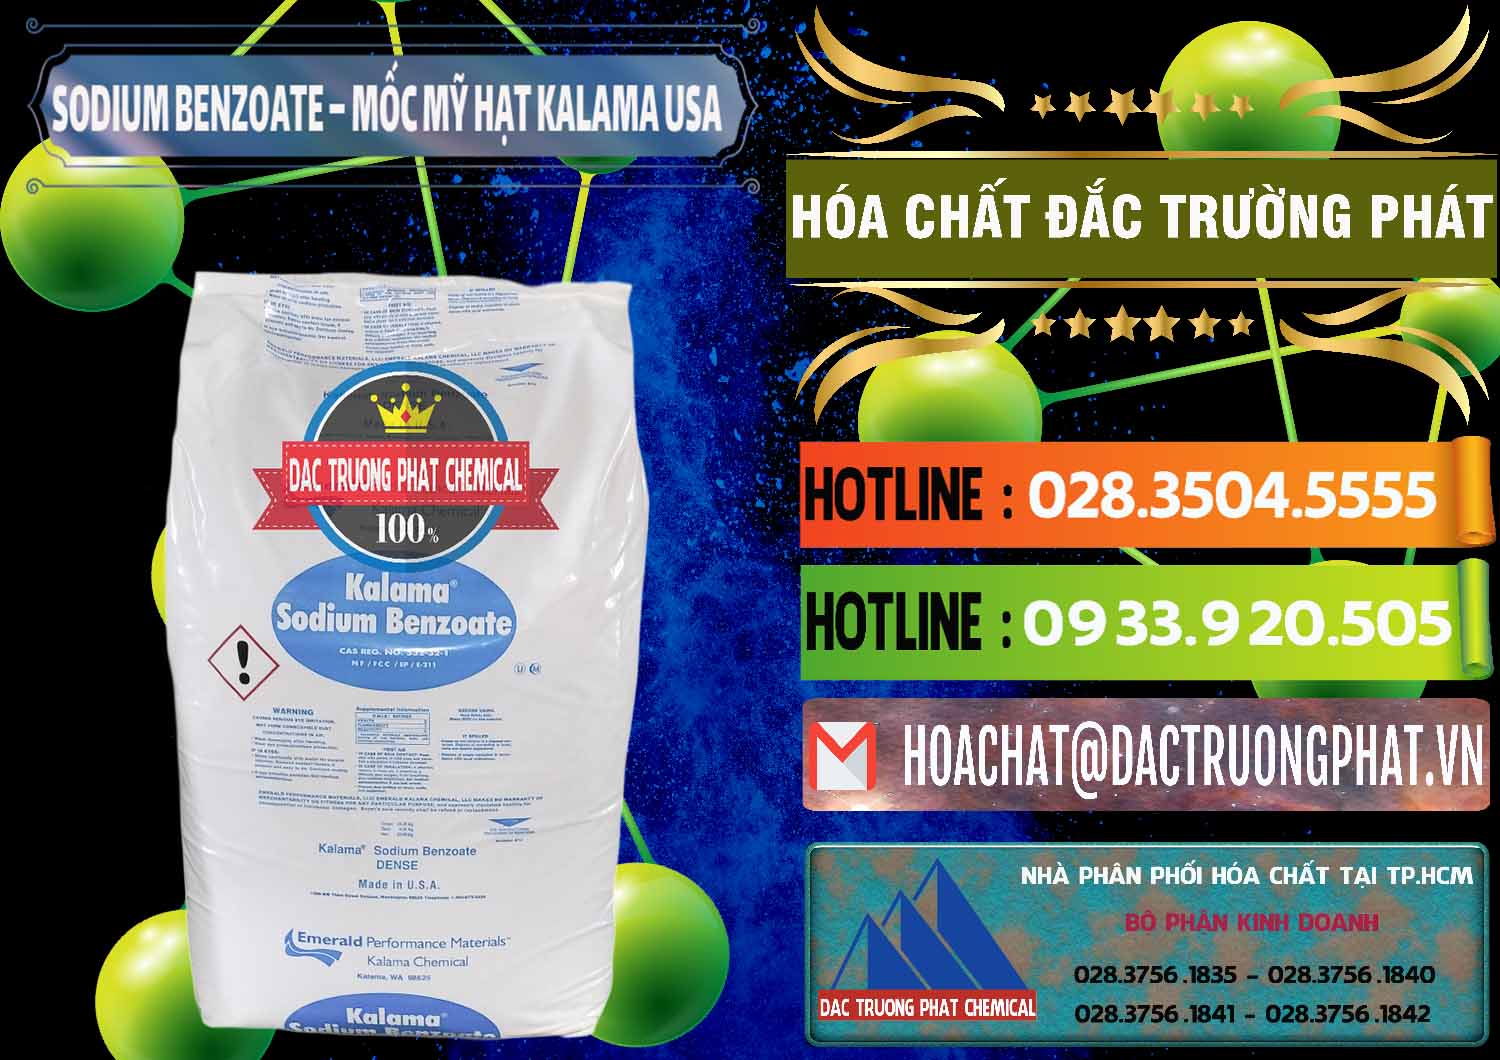 Công ty chuyên phân phối _ bán Sodium Benzoate - Mốc Hạt Kalama Food Grade Mỹ Usa - 0137 - Nơi chuyên nhập khẩu và cung cấp hóa chất tại TP.HCM - cungcaphoachat.com.vn